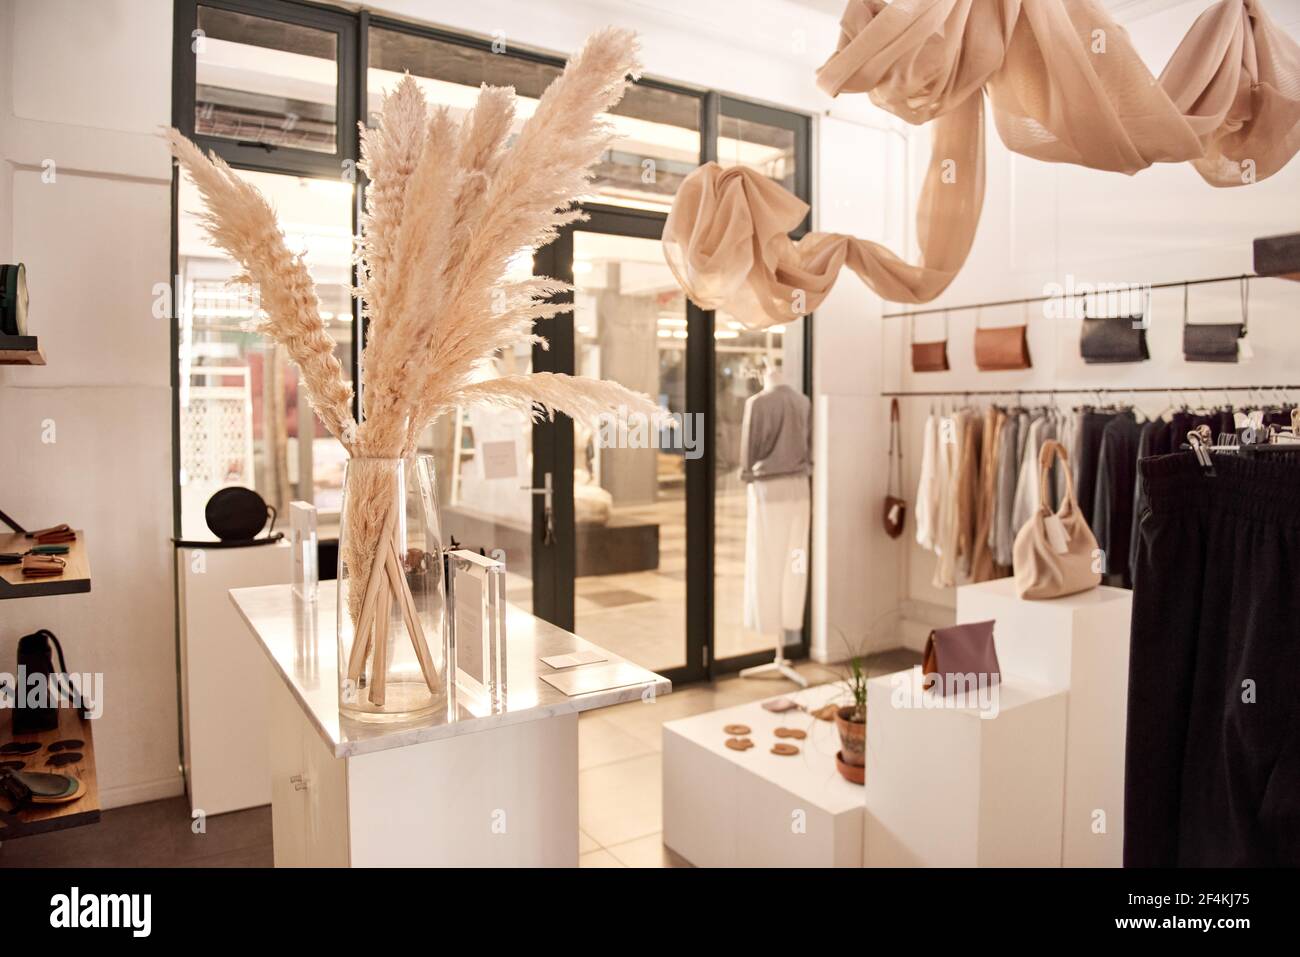 Intérieur d'une boutique de vêtements et d'accessoires tendance Photo Stock  - Alamy